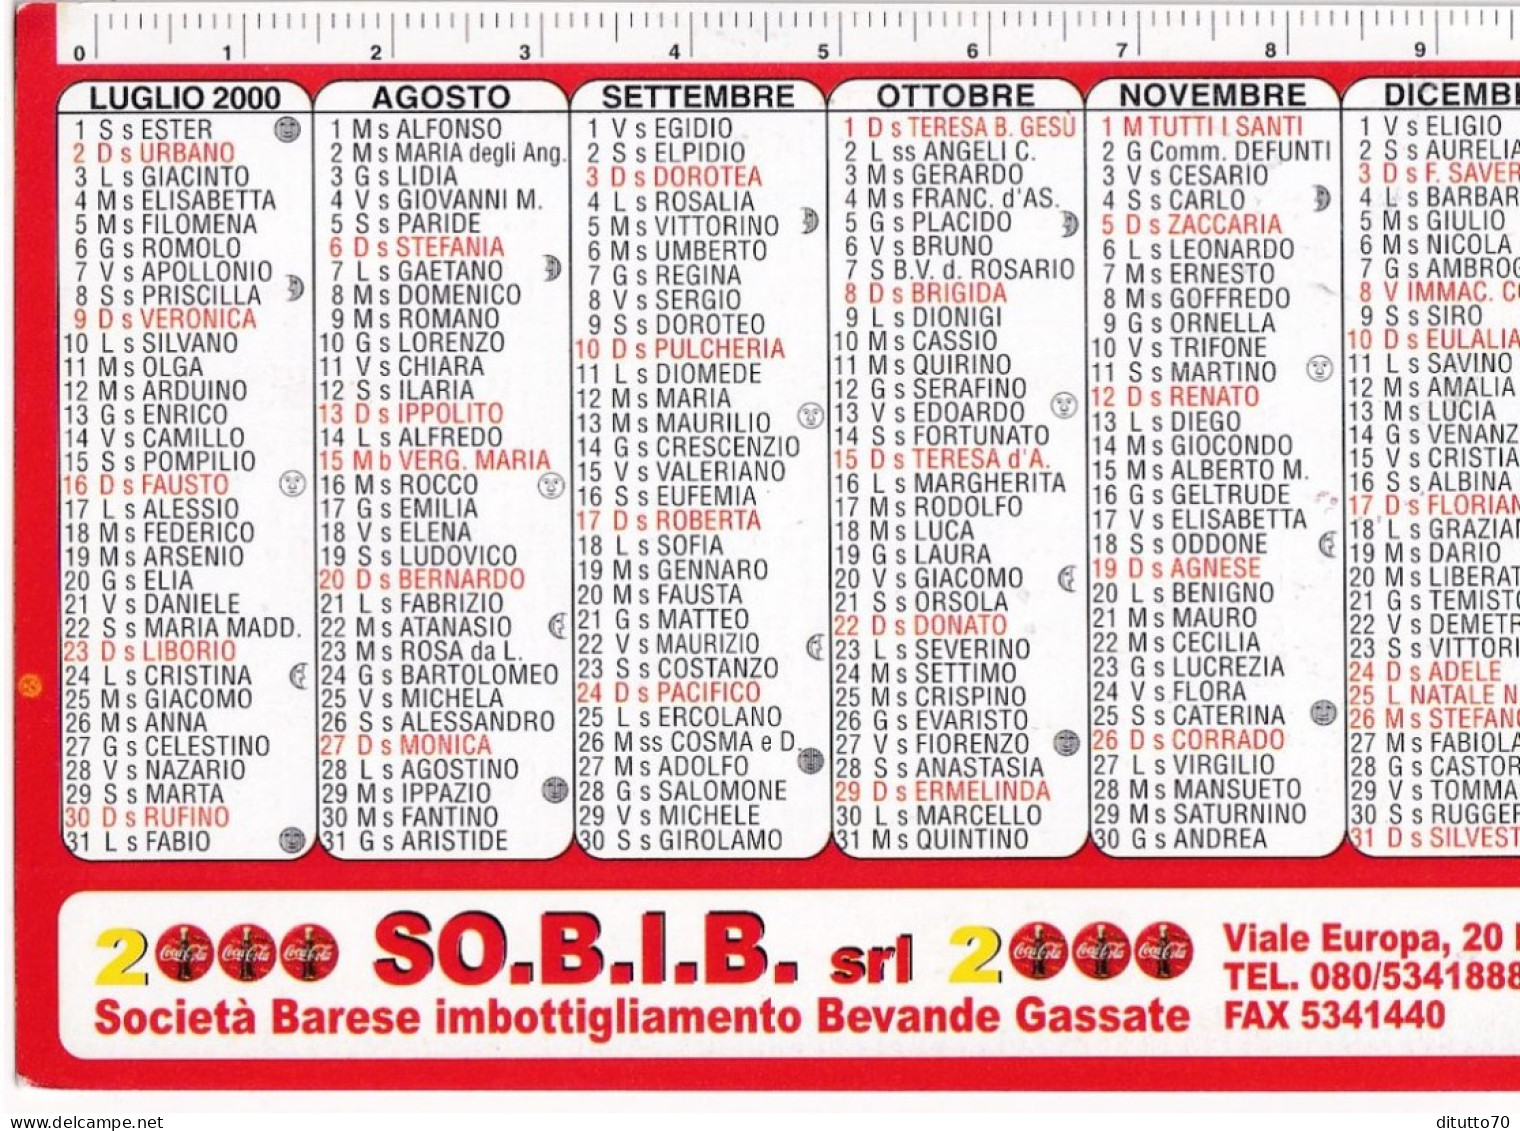 Calendarietto - SO.B.I.B. - Coca Cola - Bari - Anno 2000 - Tamaño Pequeño : 1991-00